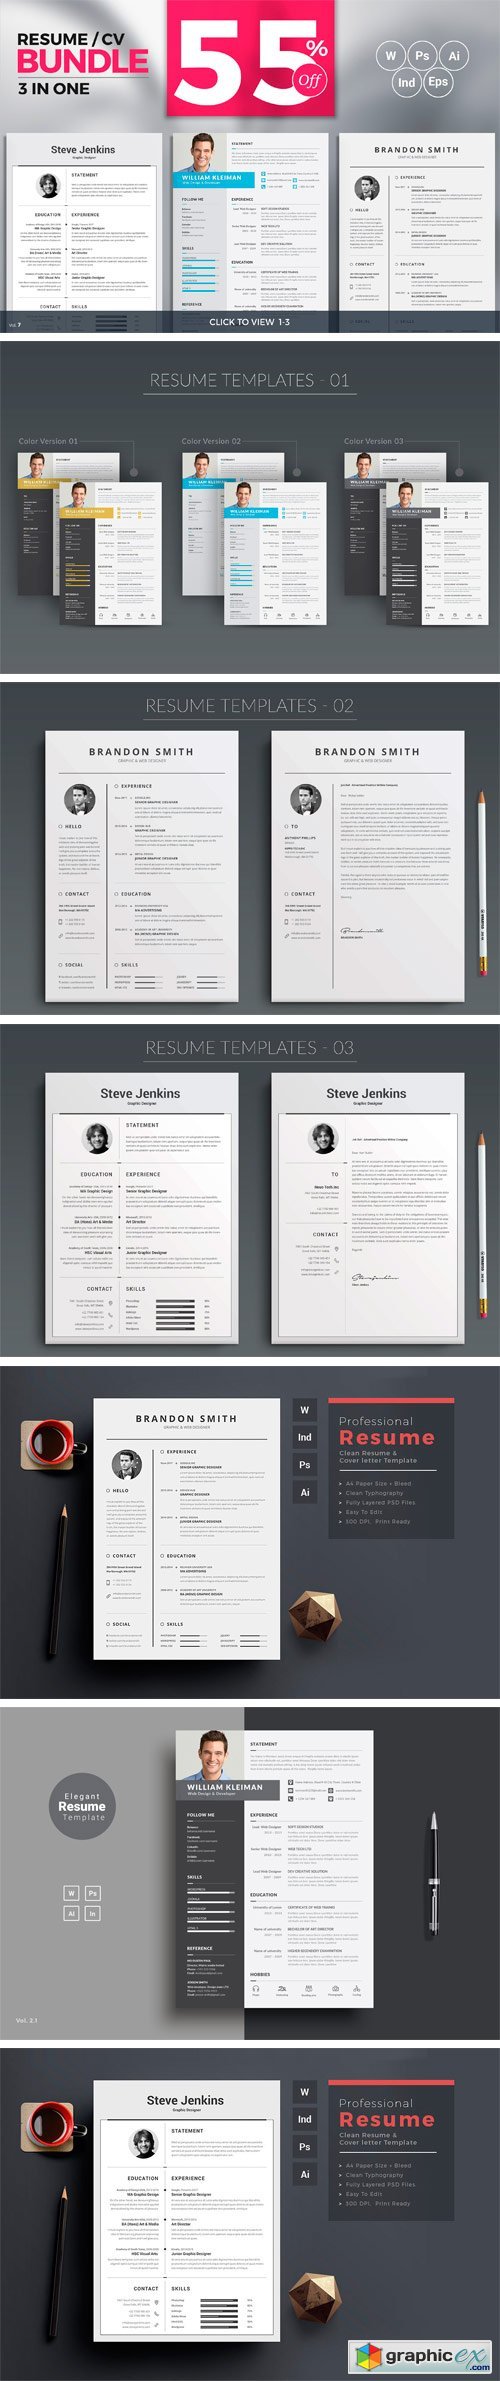 Resume/CV Minimal Bundle